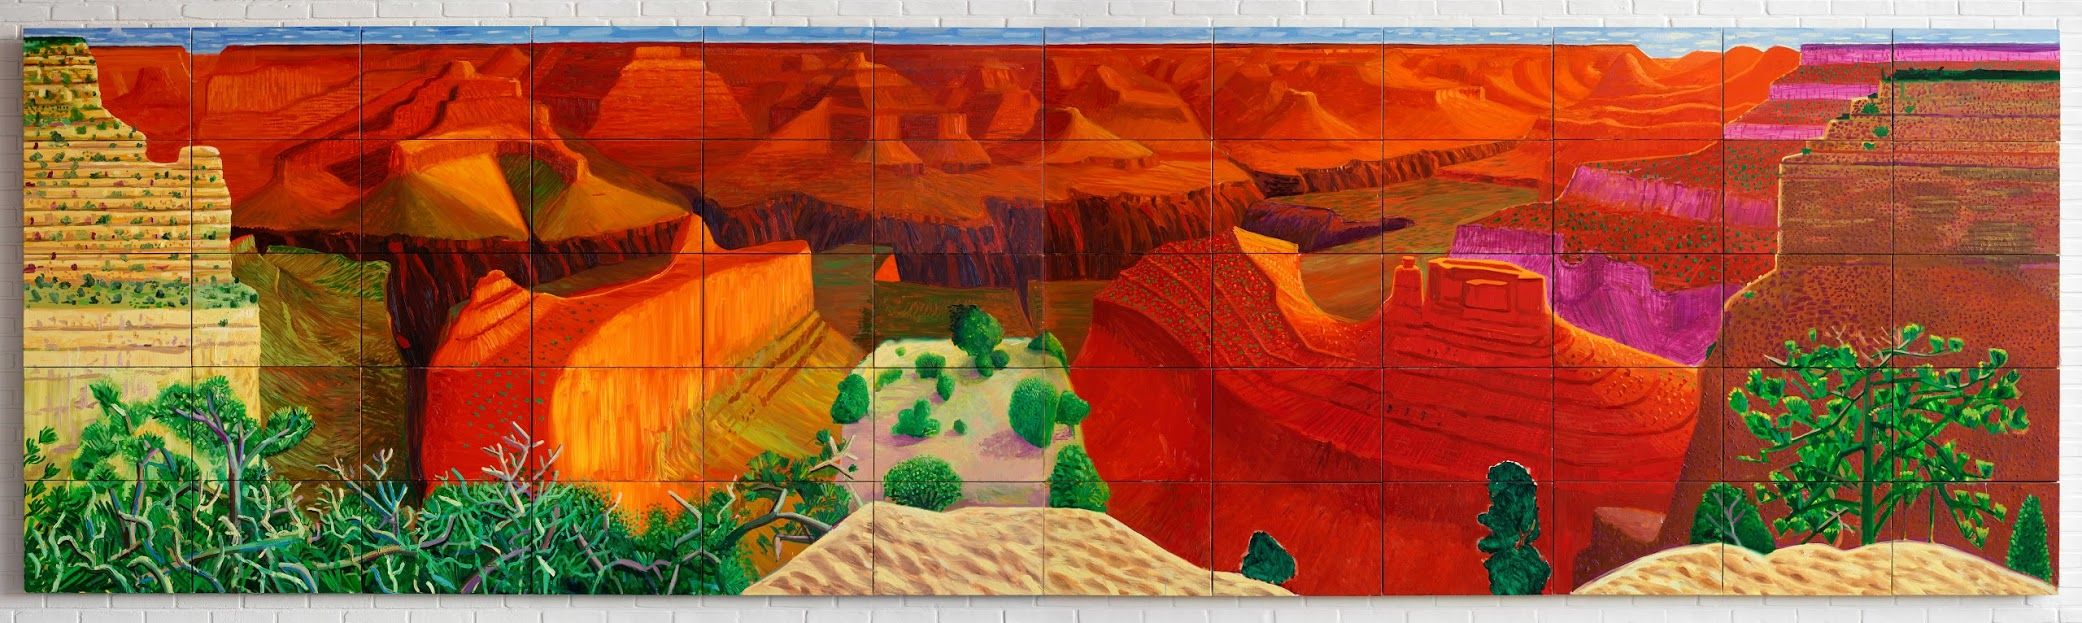 David Hockney,A Bigger Grand Canyon, 1988.jpg